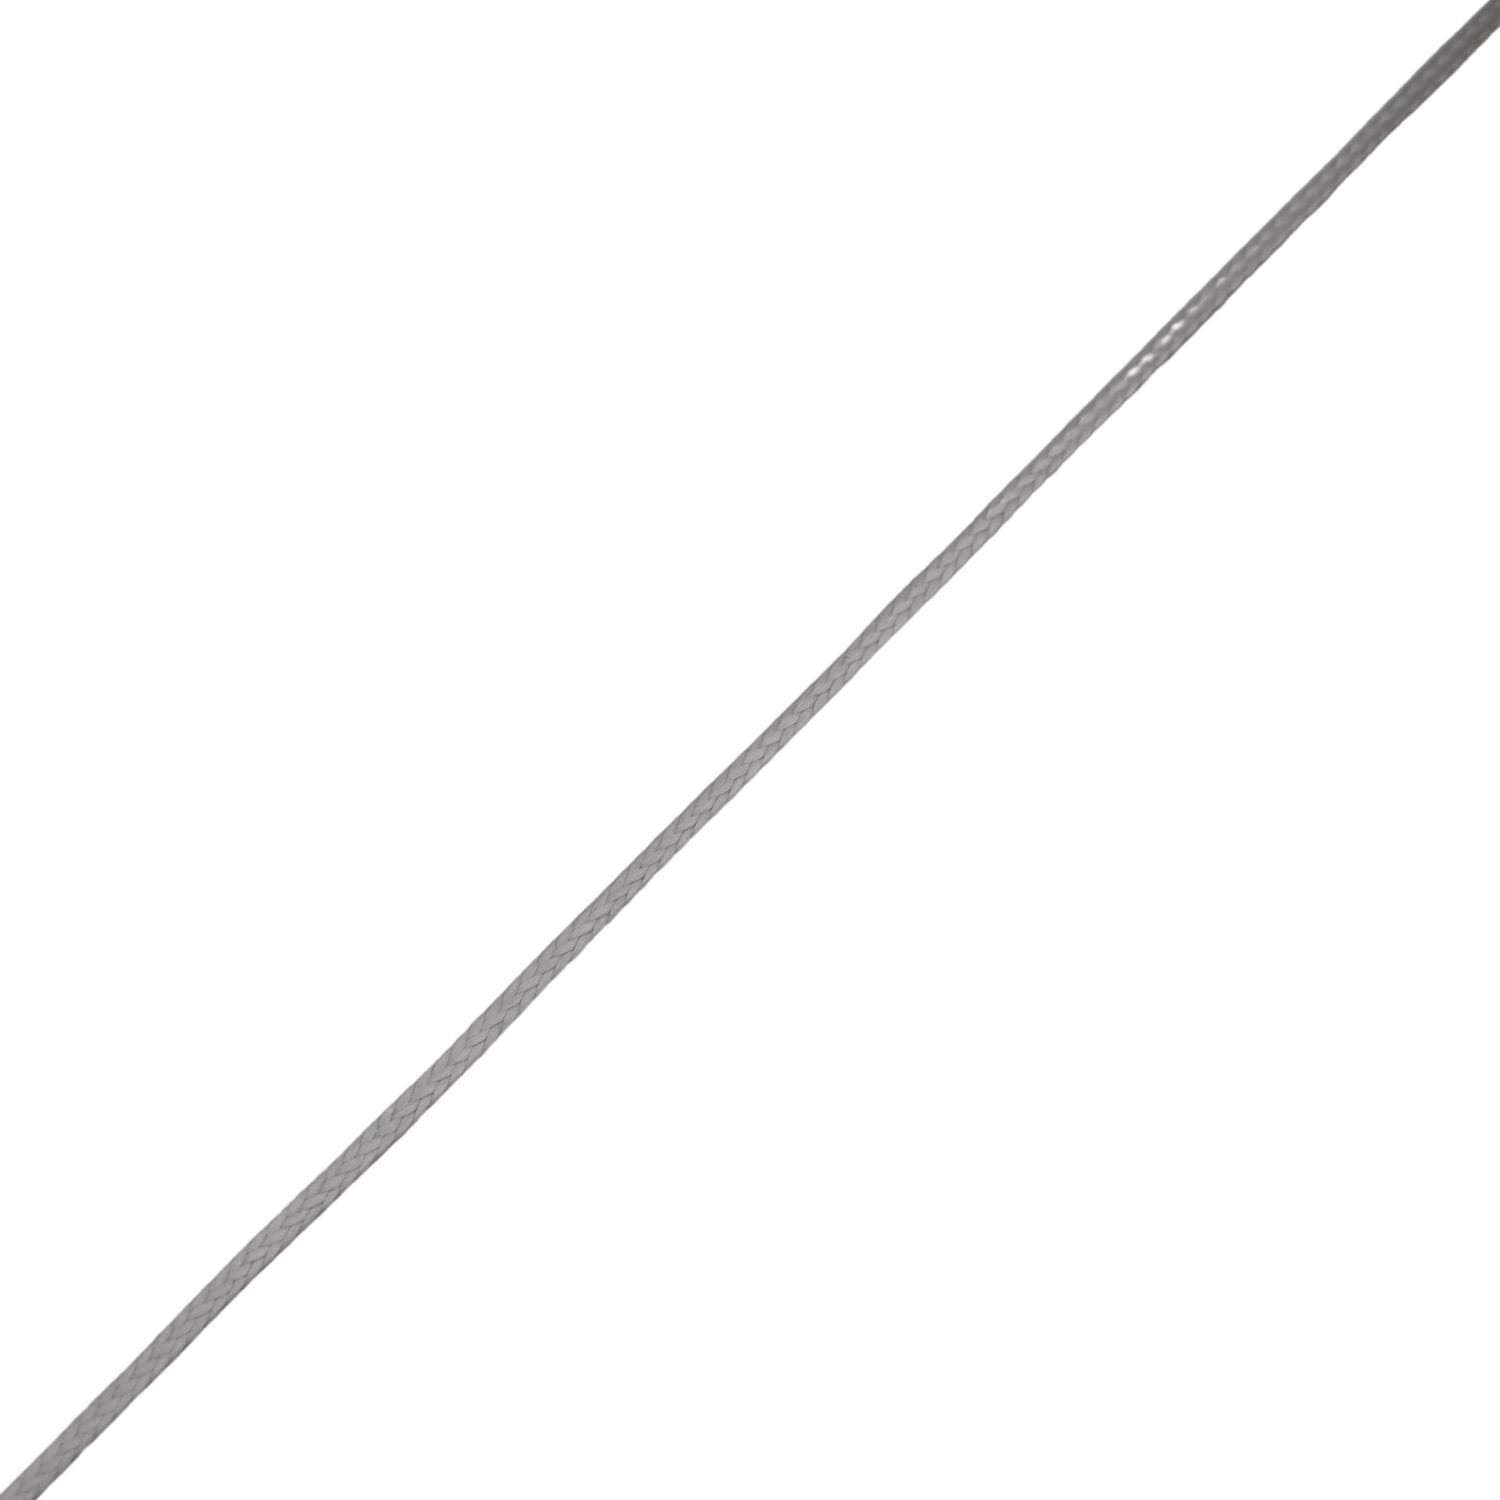 Hampidjan DynIce 78 Ljusgrå, 2.6mm